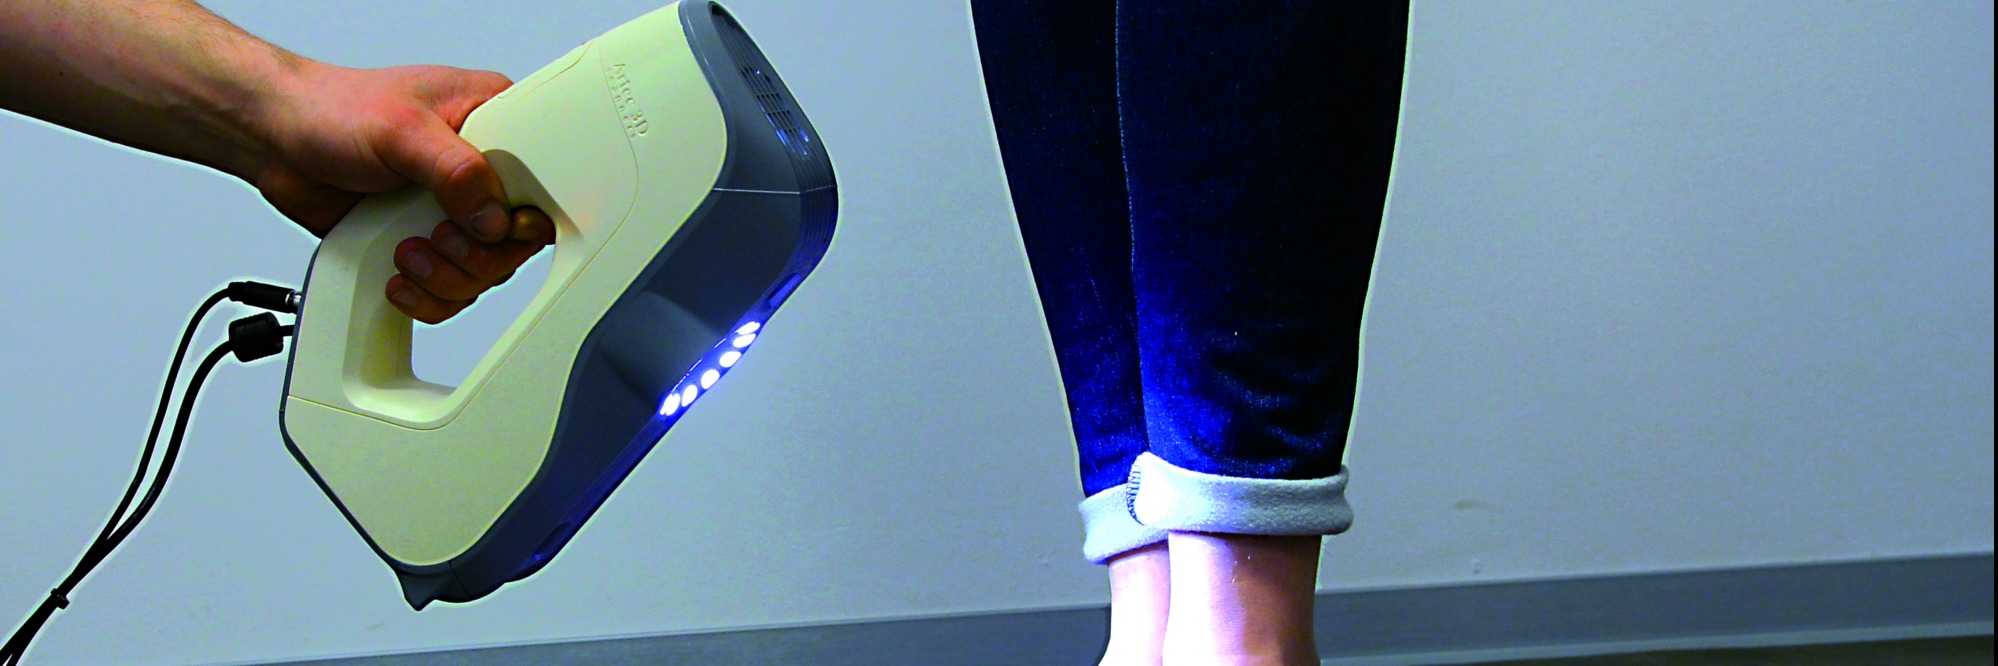 Mobiler 3D-Scanner im orthopädischen Schuhhandwerk – Mehr Kundennähe und orthopädische Präzision